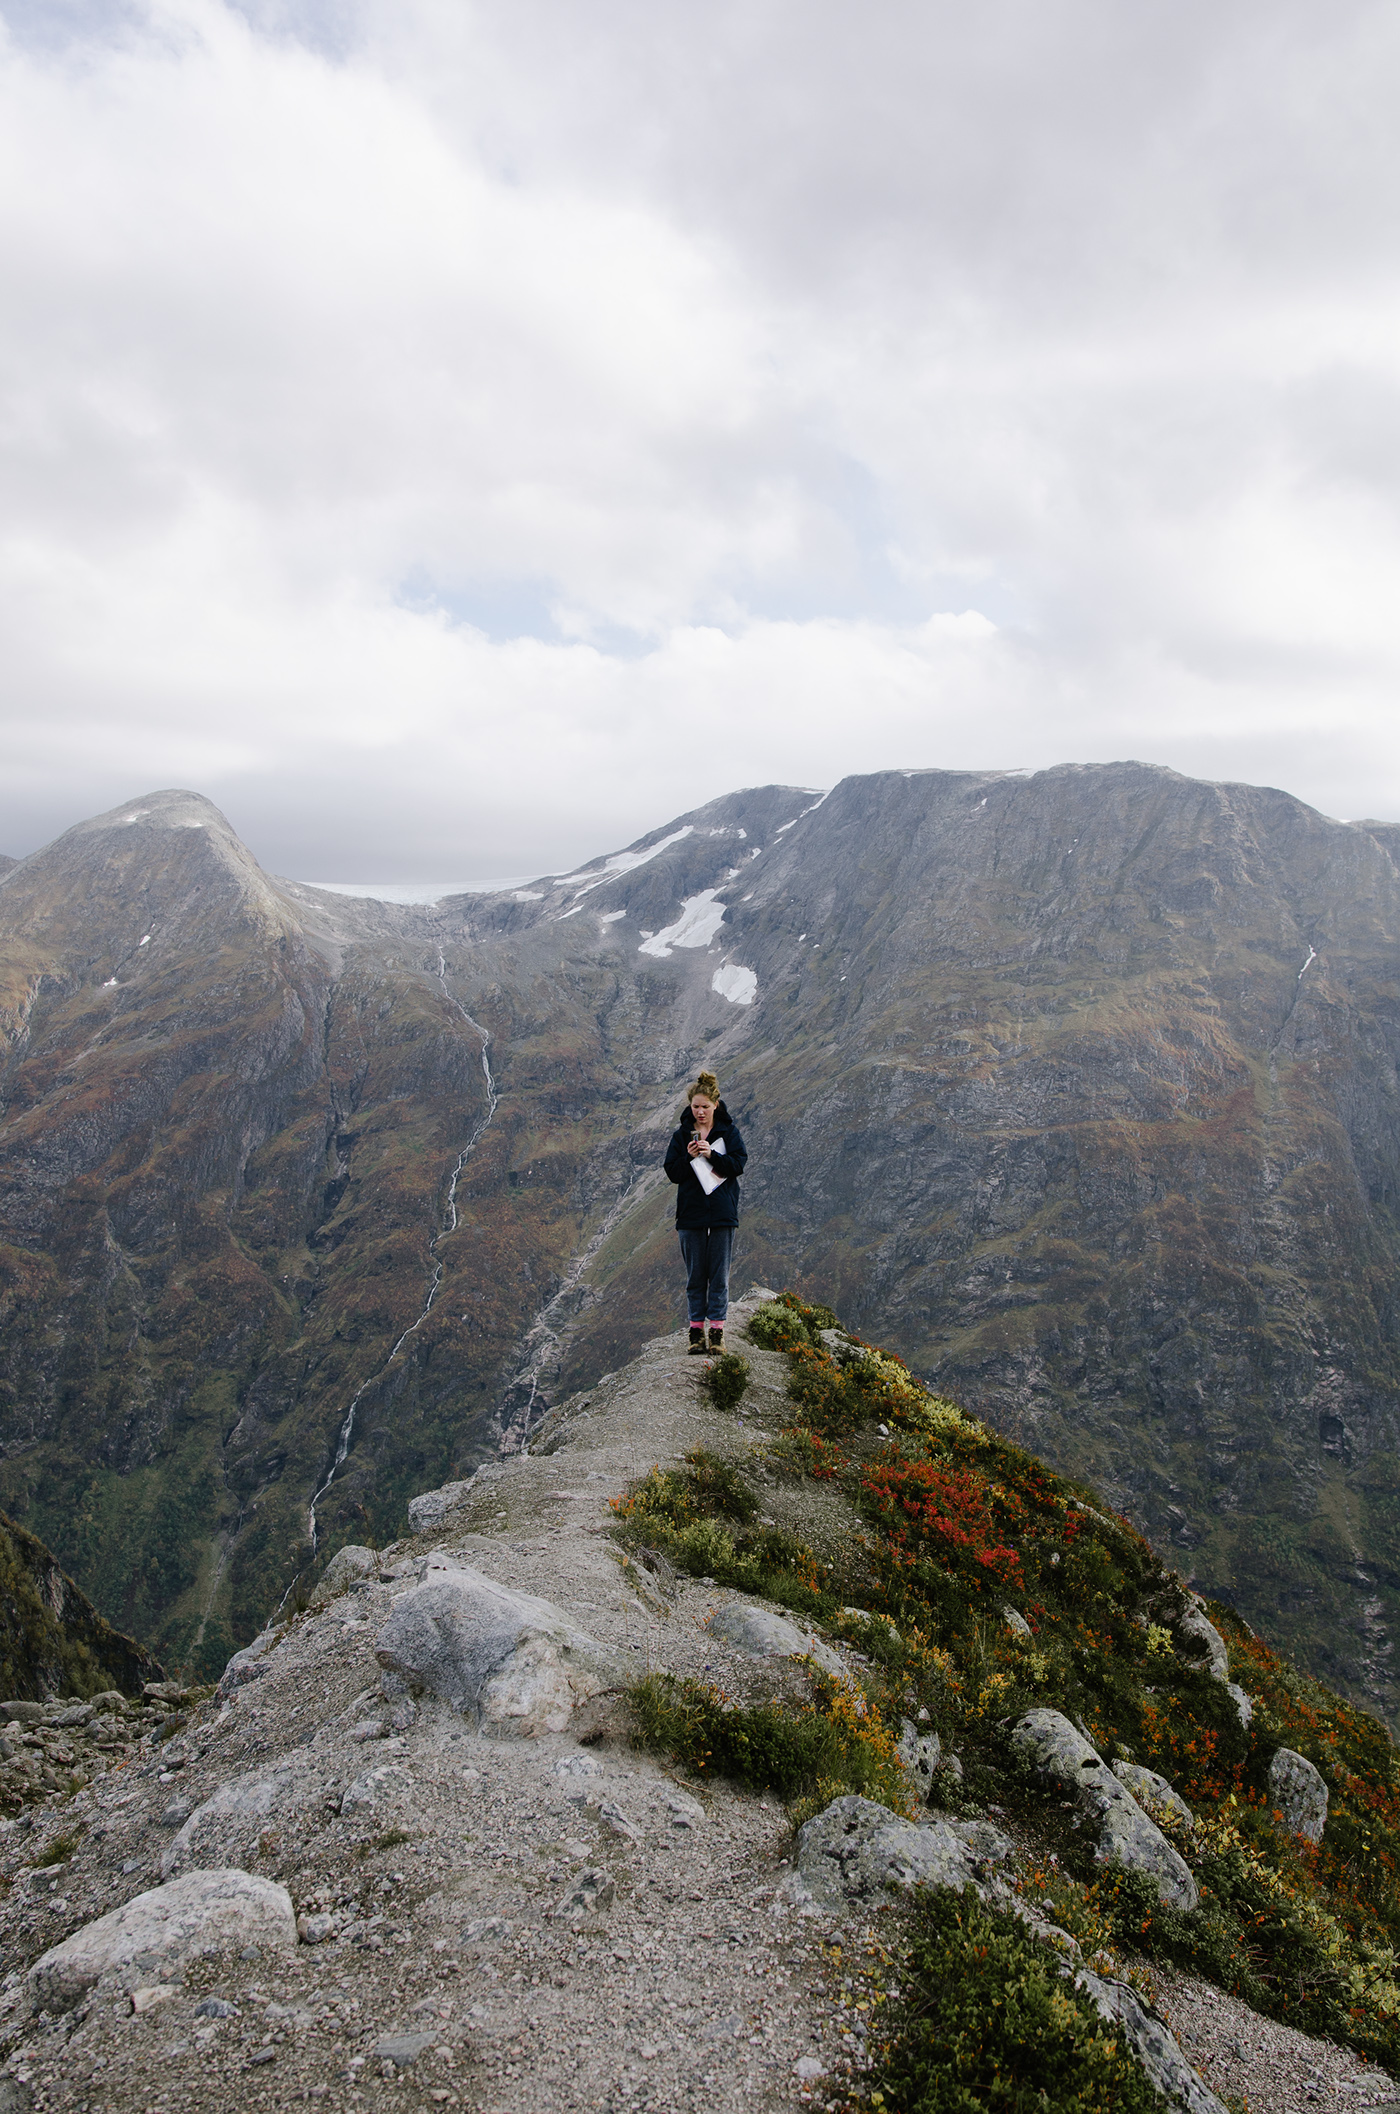 Landscape adventure Nature mountain mountains glacier norway fjords